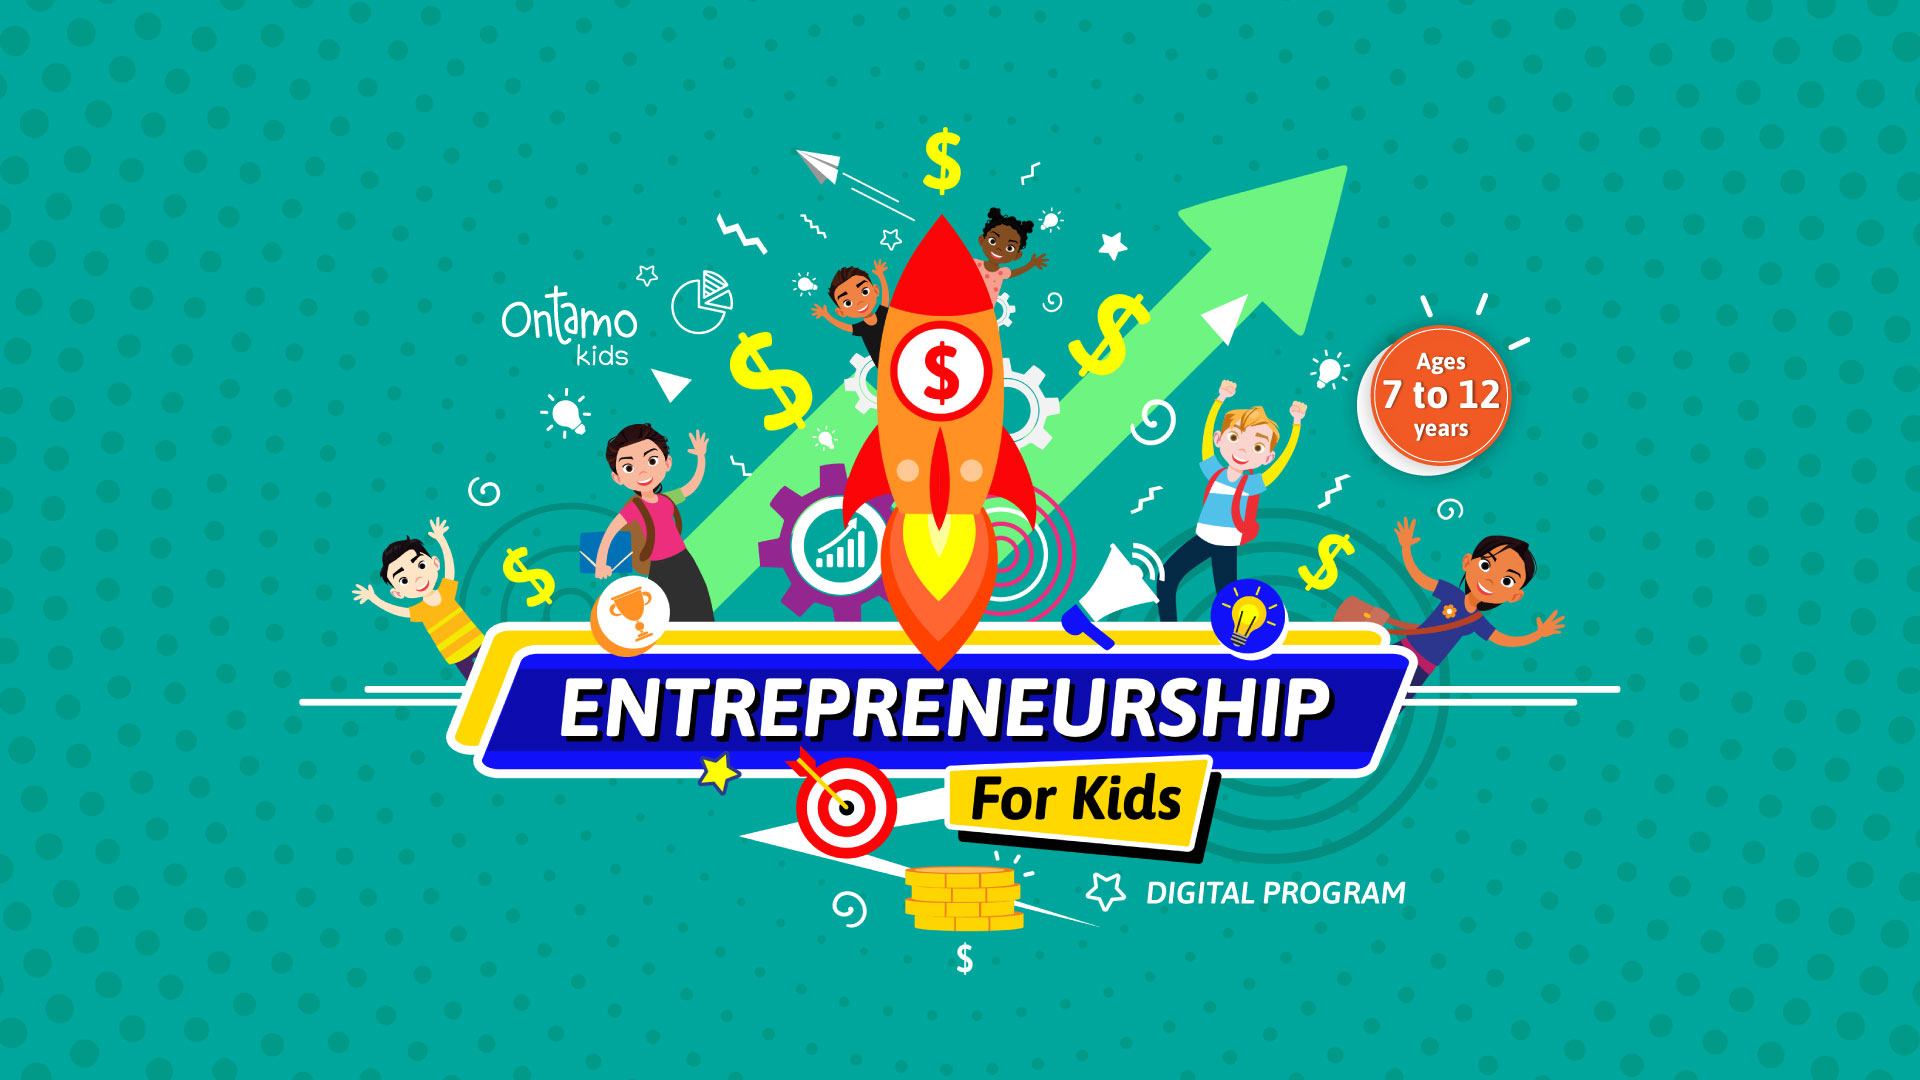 Entrepreneurship For Kids